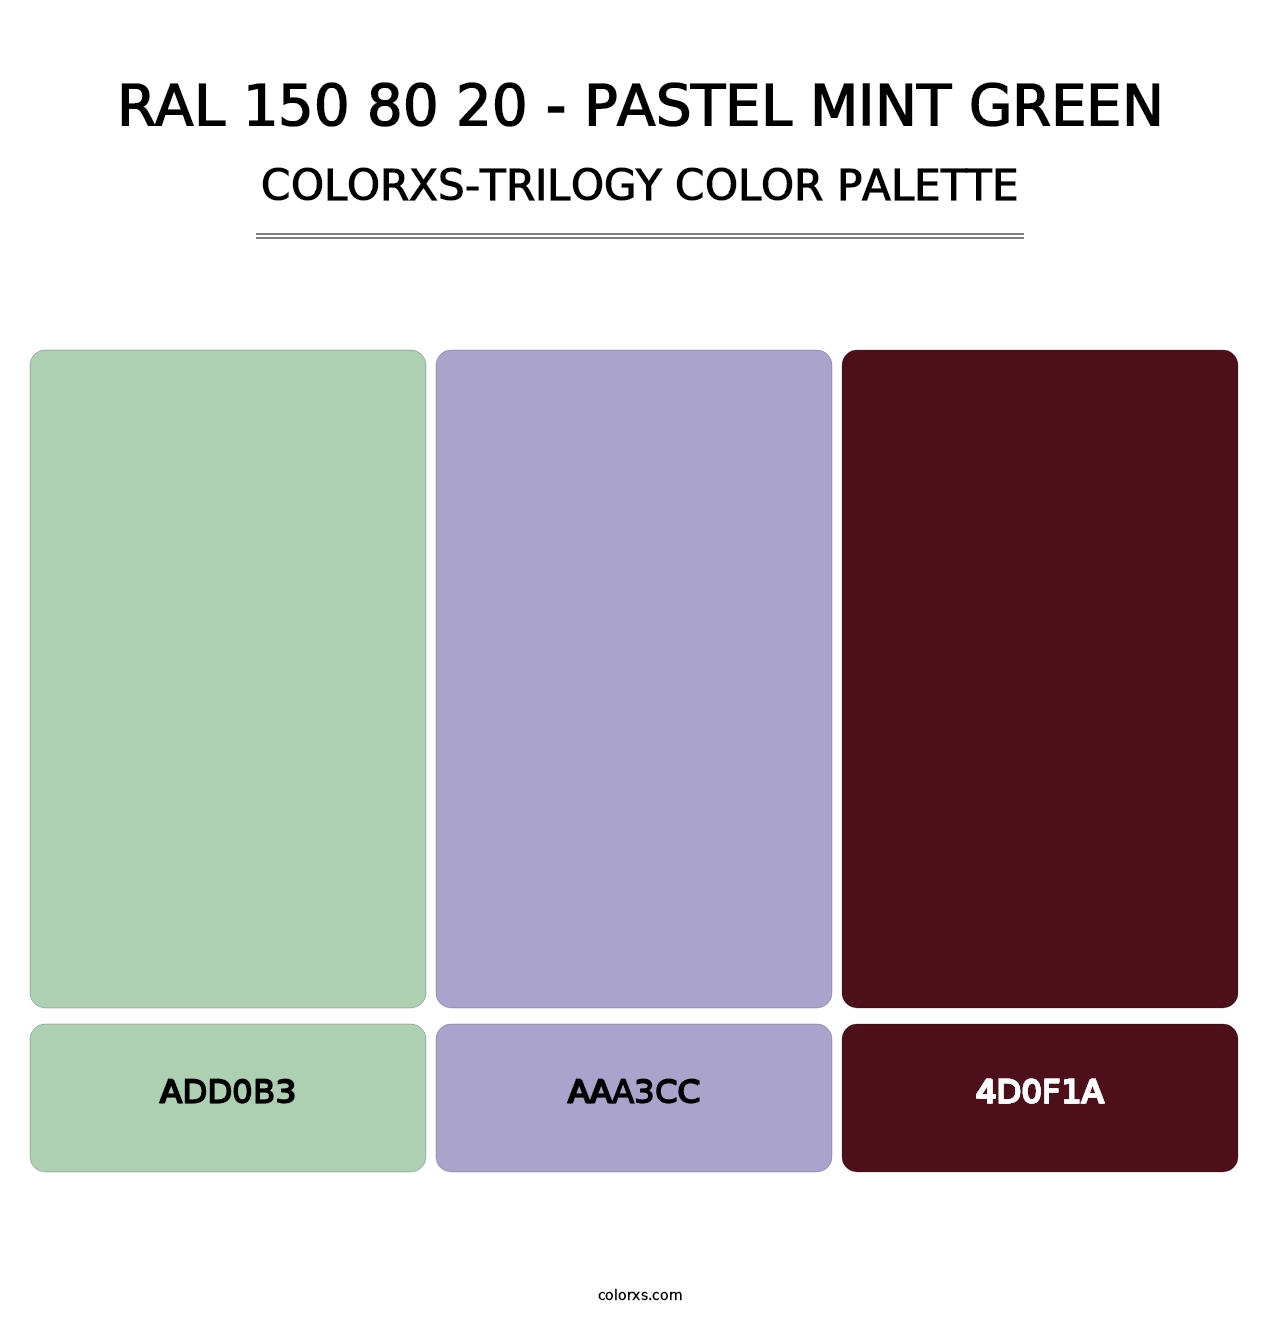 RAL 150 80 20 - Pastel Mint Green - Colorxs Trilogy Palette